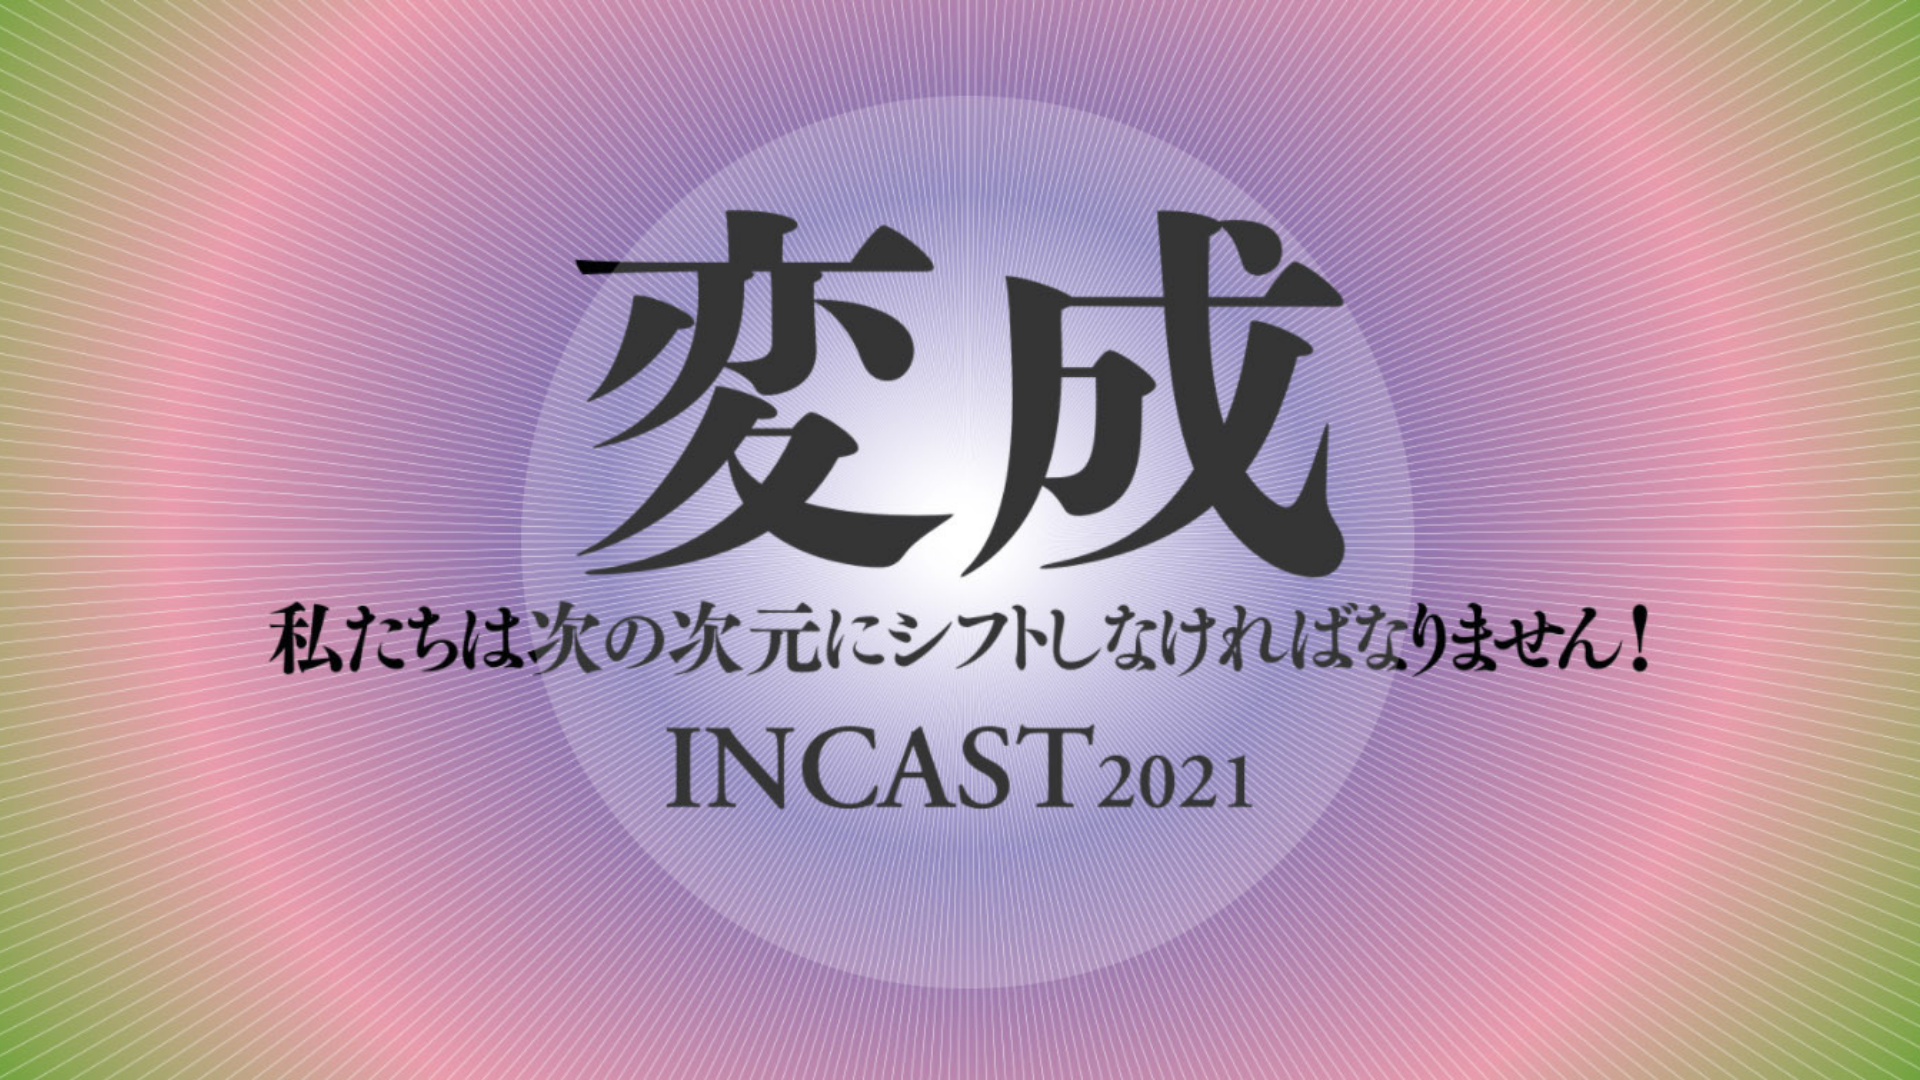 logo incast21